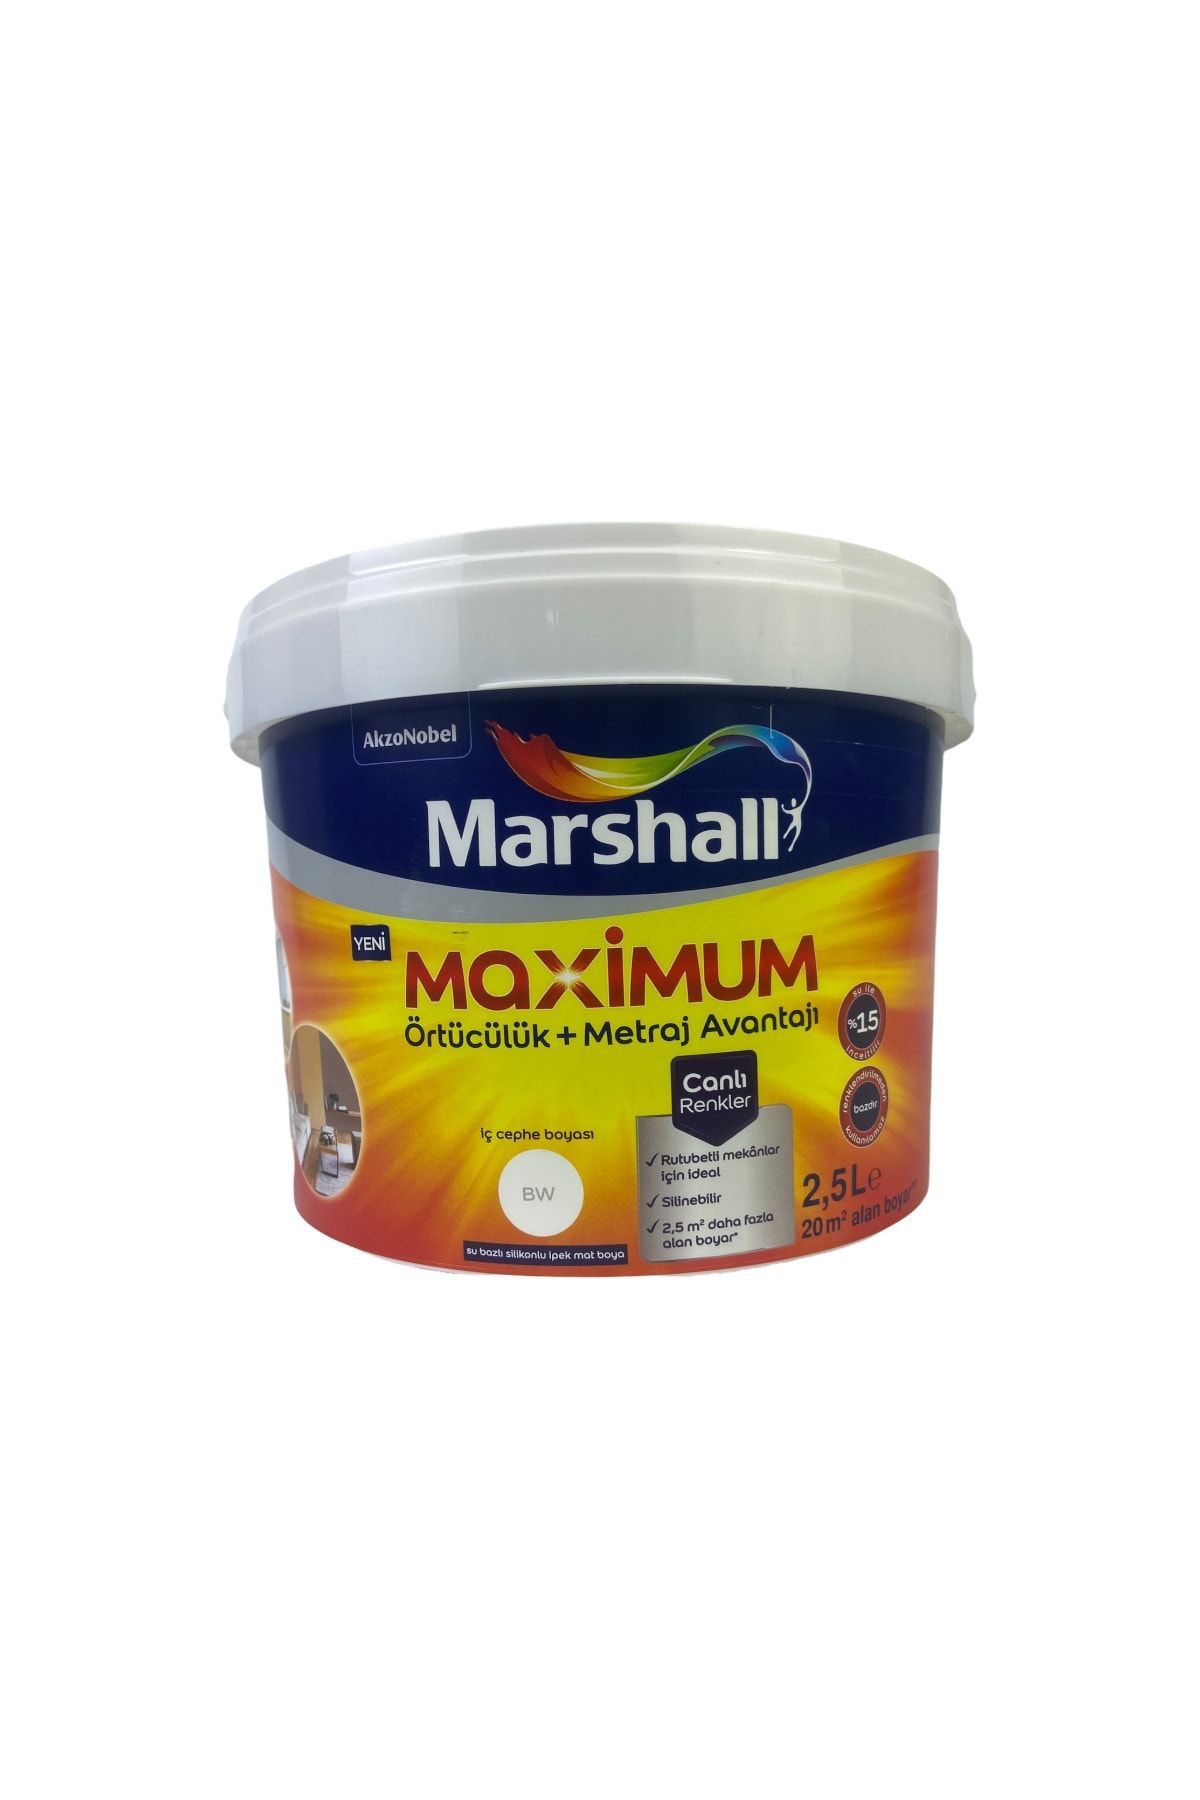 Marshall Maximum Iç Cephe Boyası Vanilya Çiçeği 2,5l